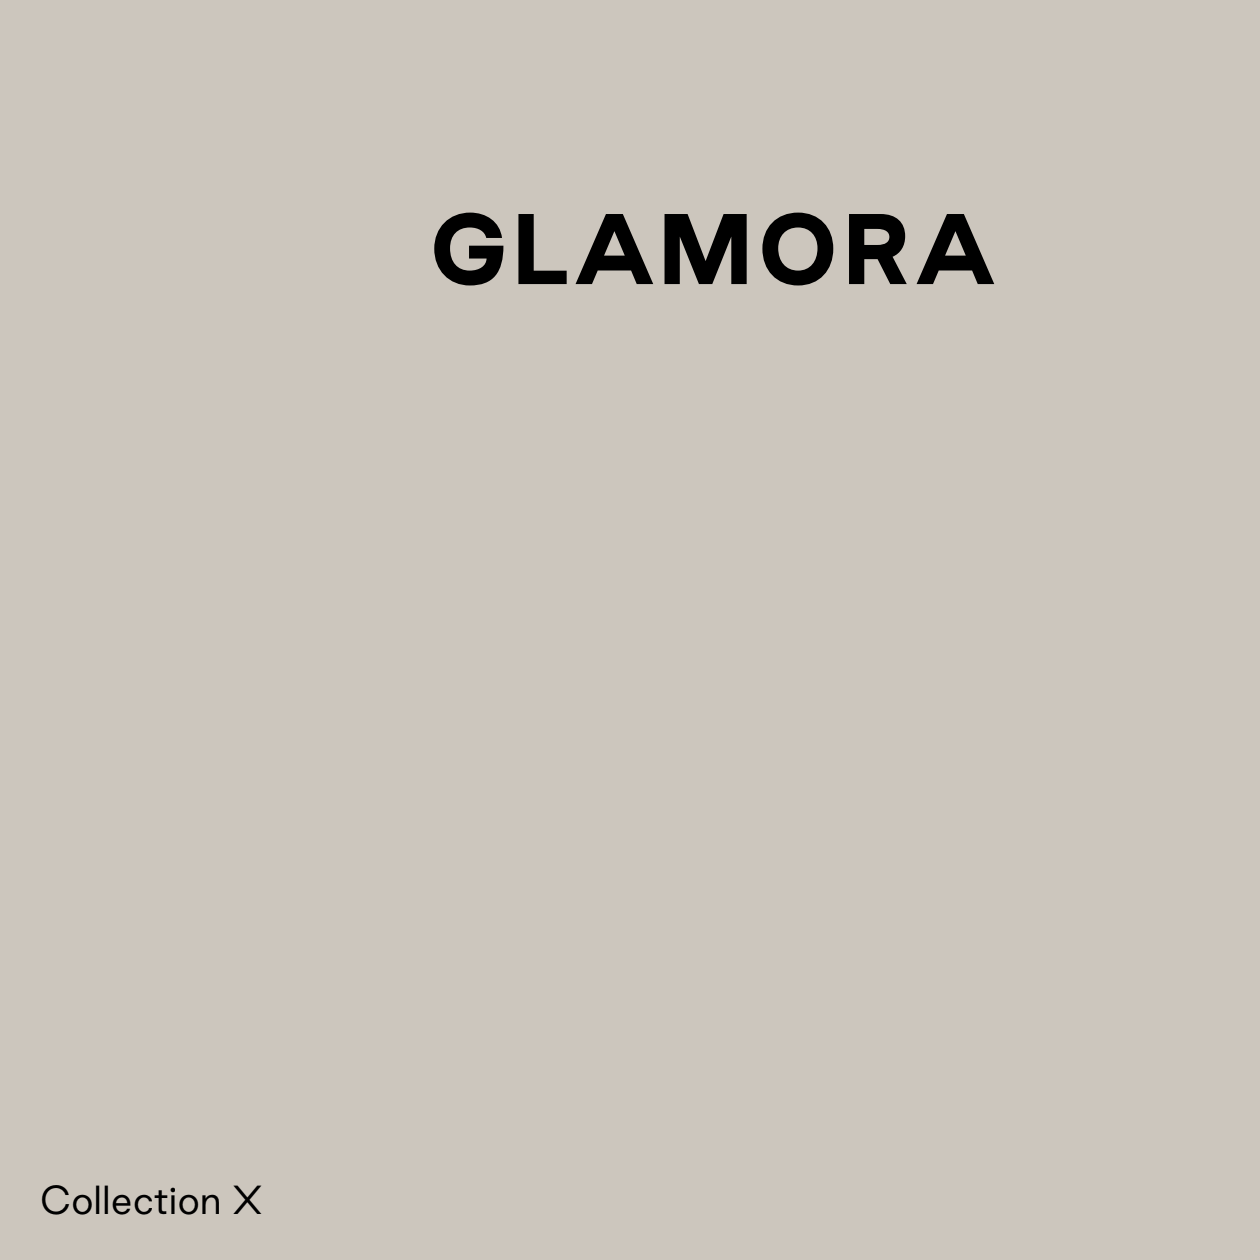 Katalóg tapiet značky Glamora